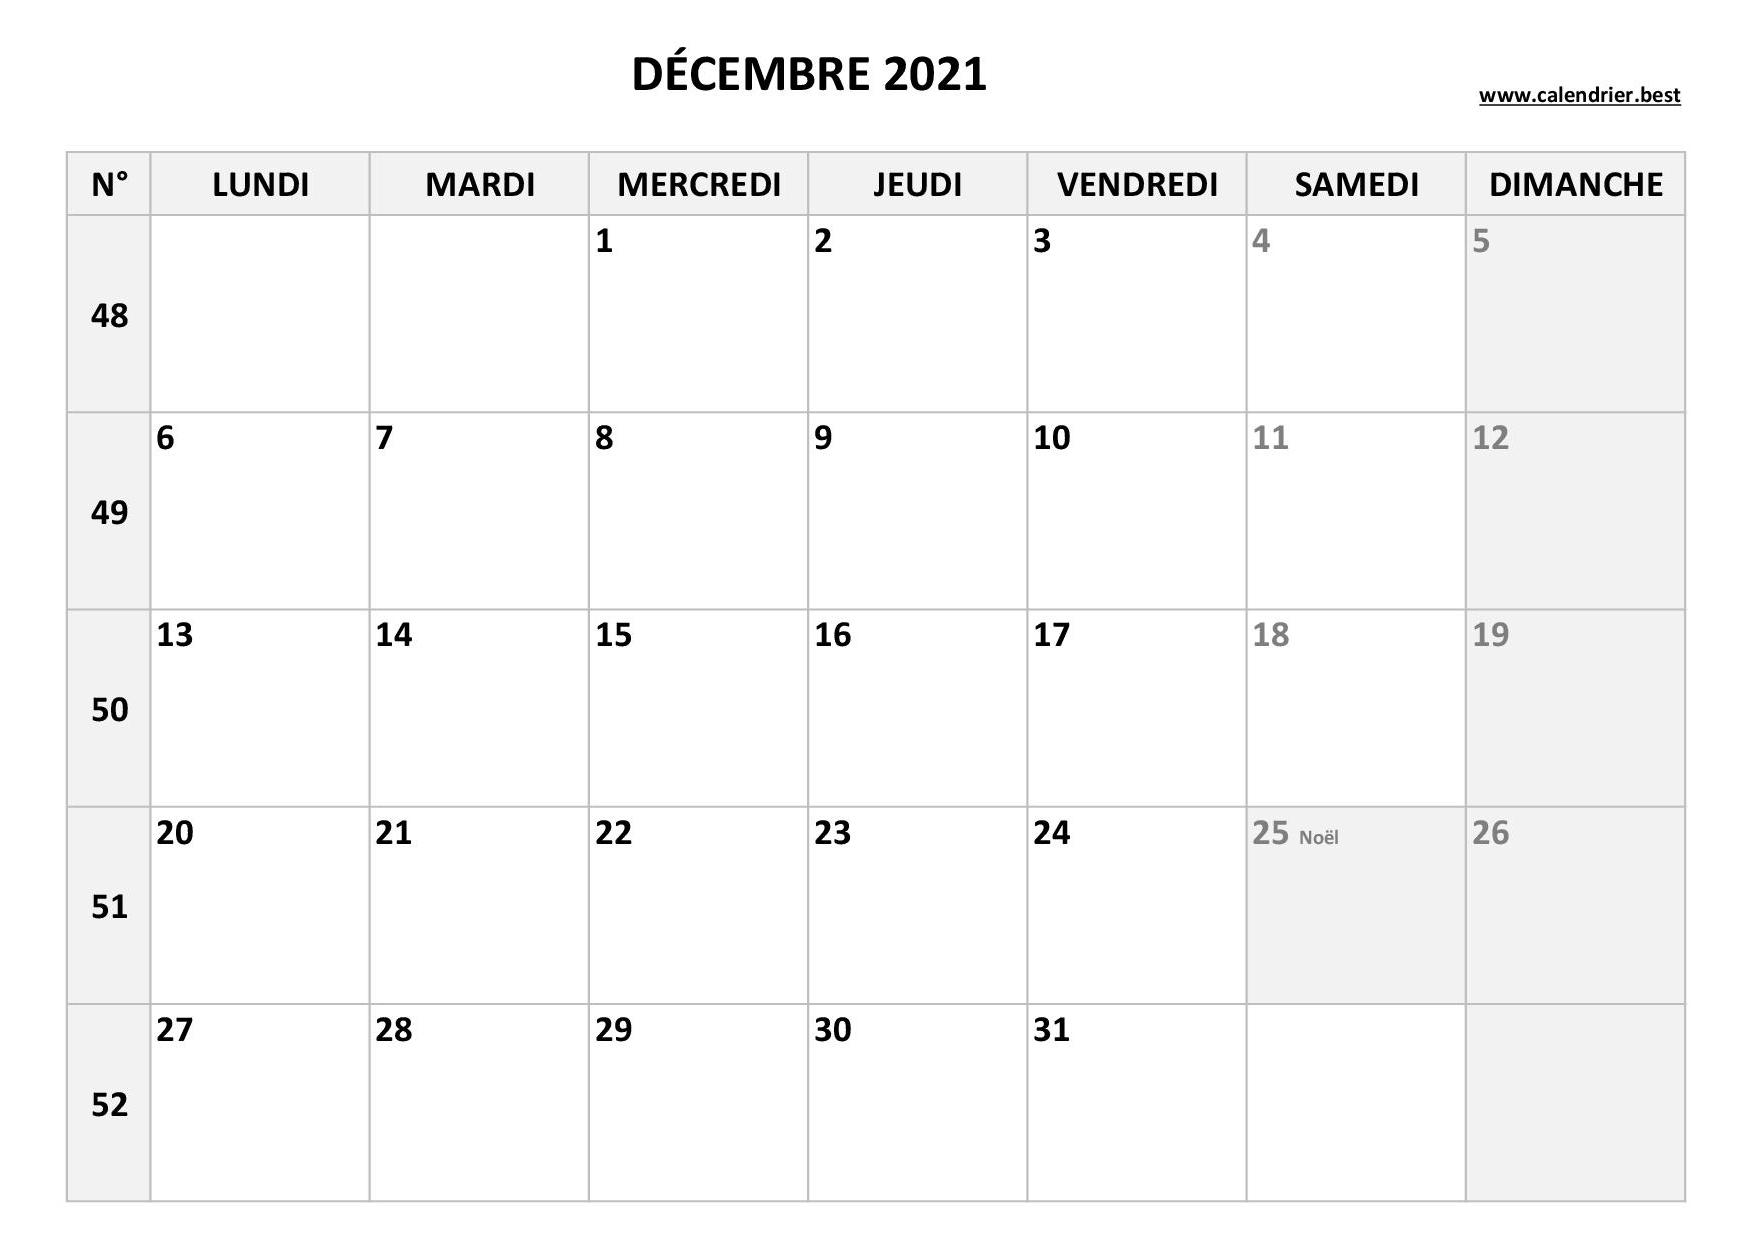 Agenda 2021 pro: semainier calendrier de décembre 2020 à janvier